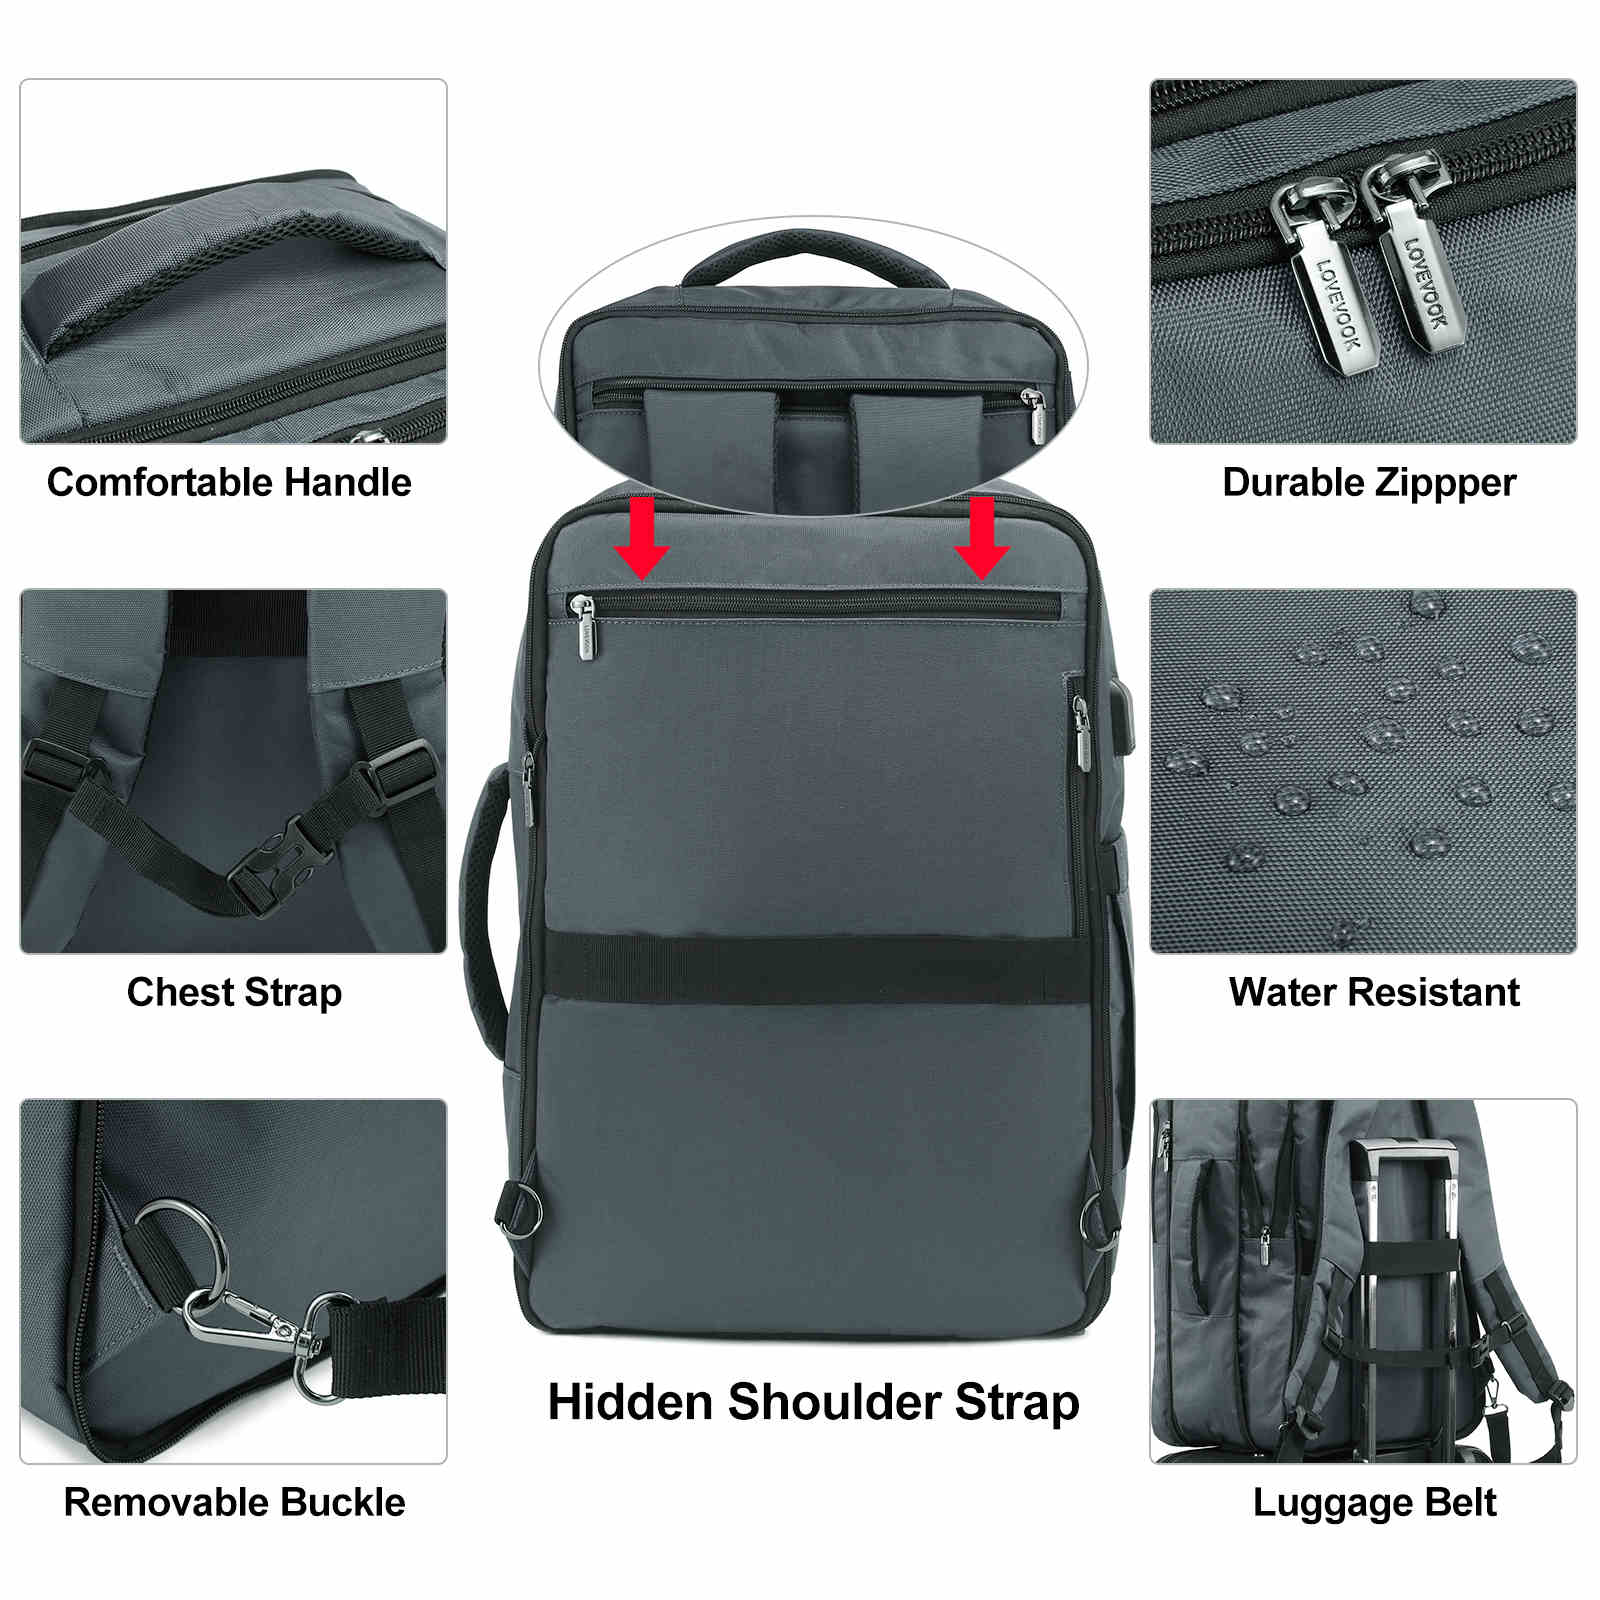 Cloudwalker II Backpack | Lovevook - Optimal Travel & Daily Use Bag ...